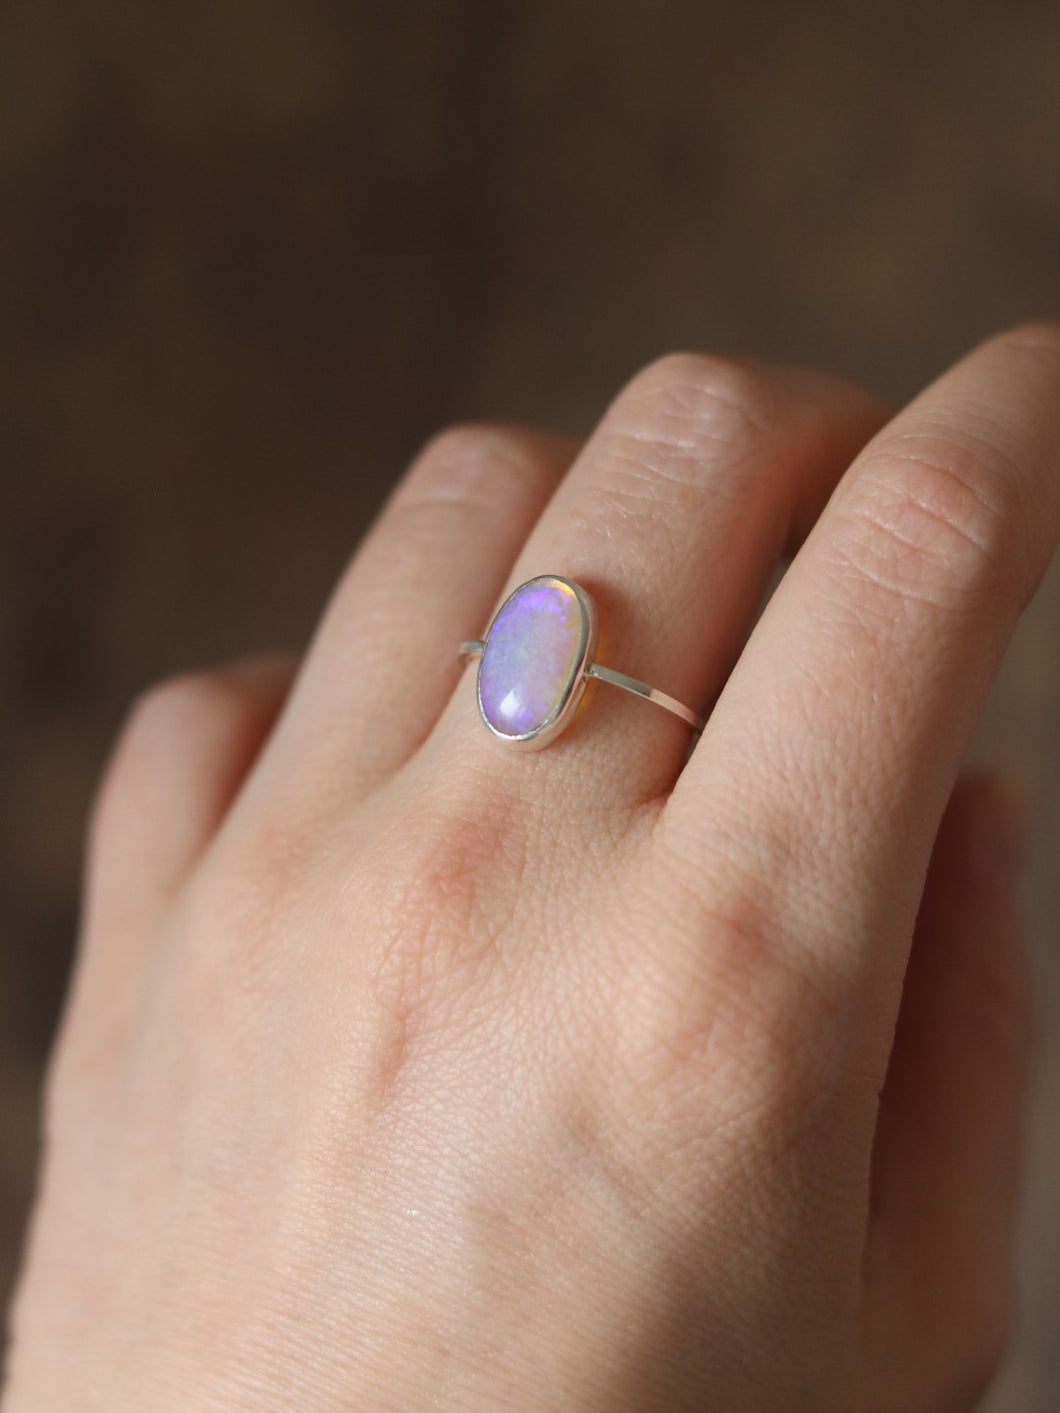 Dainty Australian Opal Ring Size 8.25